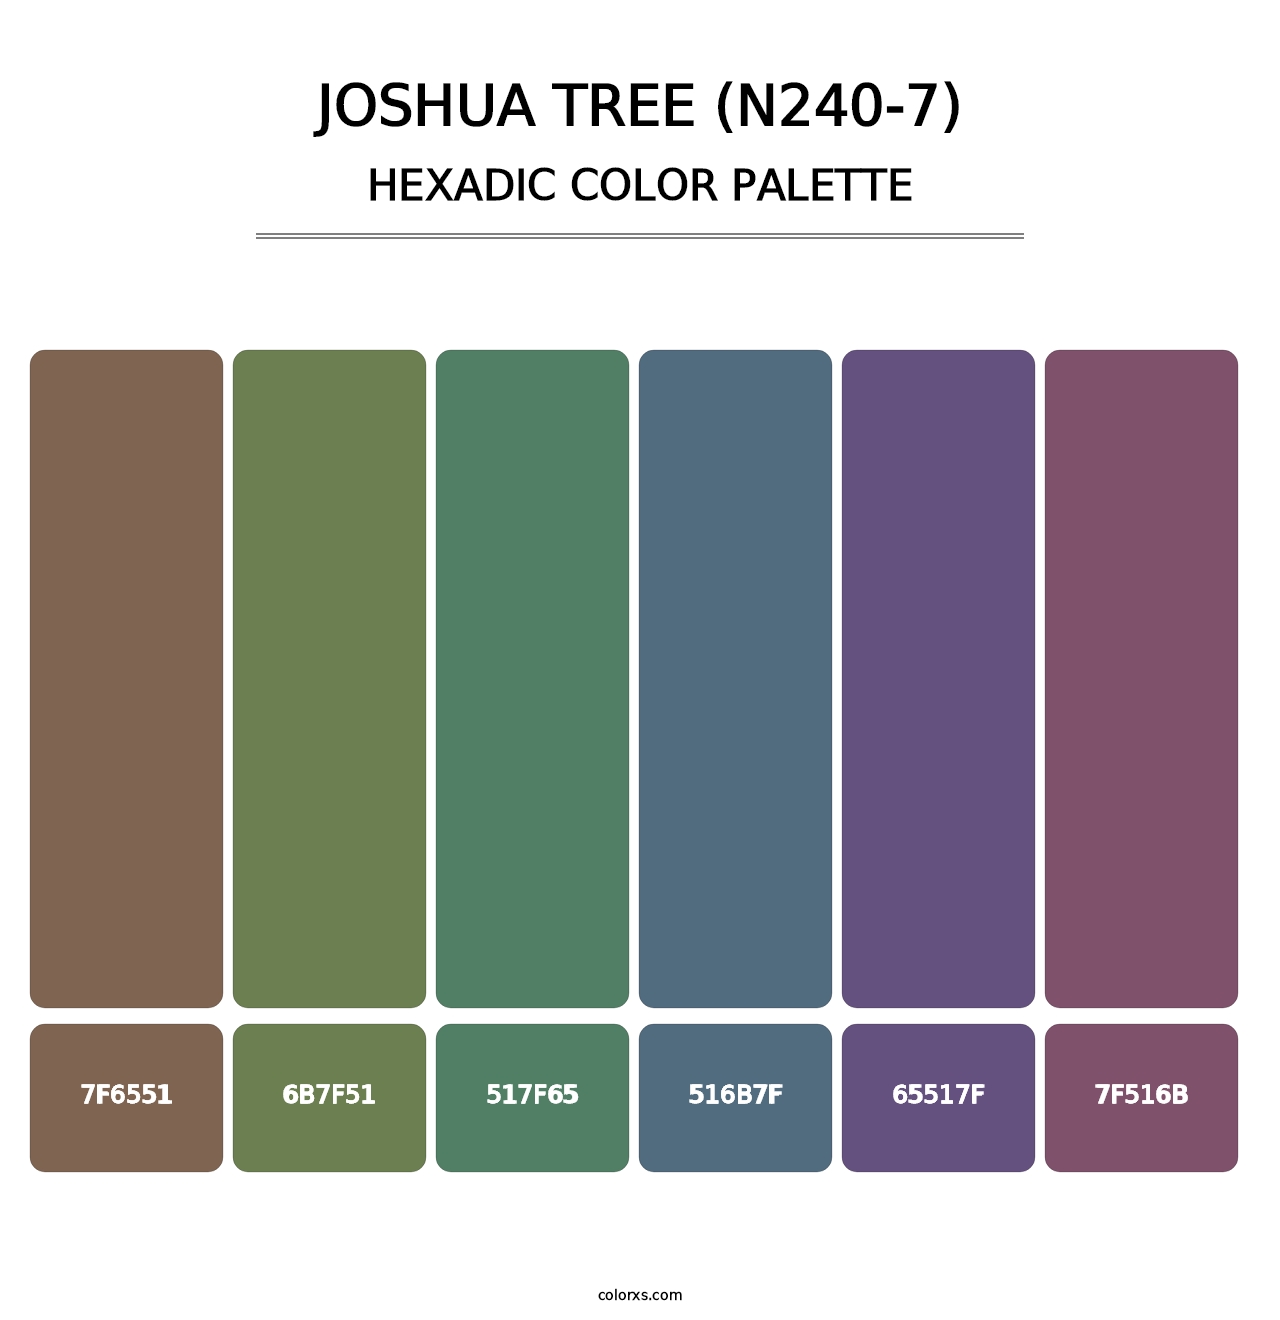 Joshua Tree (N240-7) - Hexadic Color Palette